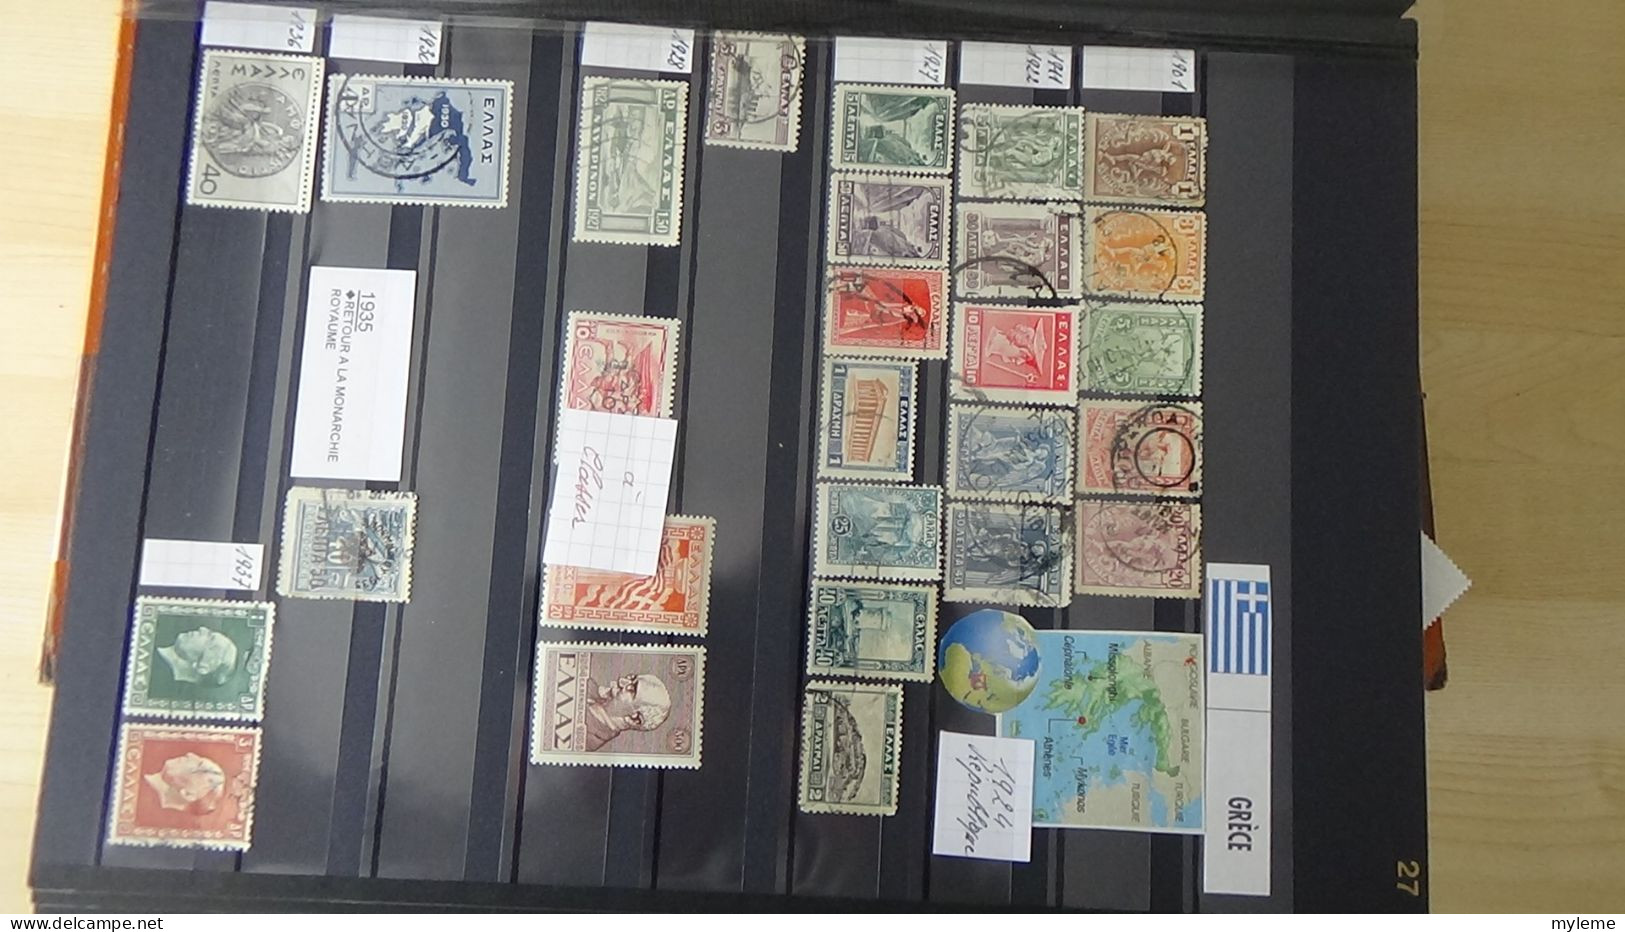 BF44 Bel ensemble de timbres de divers pays dont PA 15 * signé  voir scan. Cote 800 euros